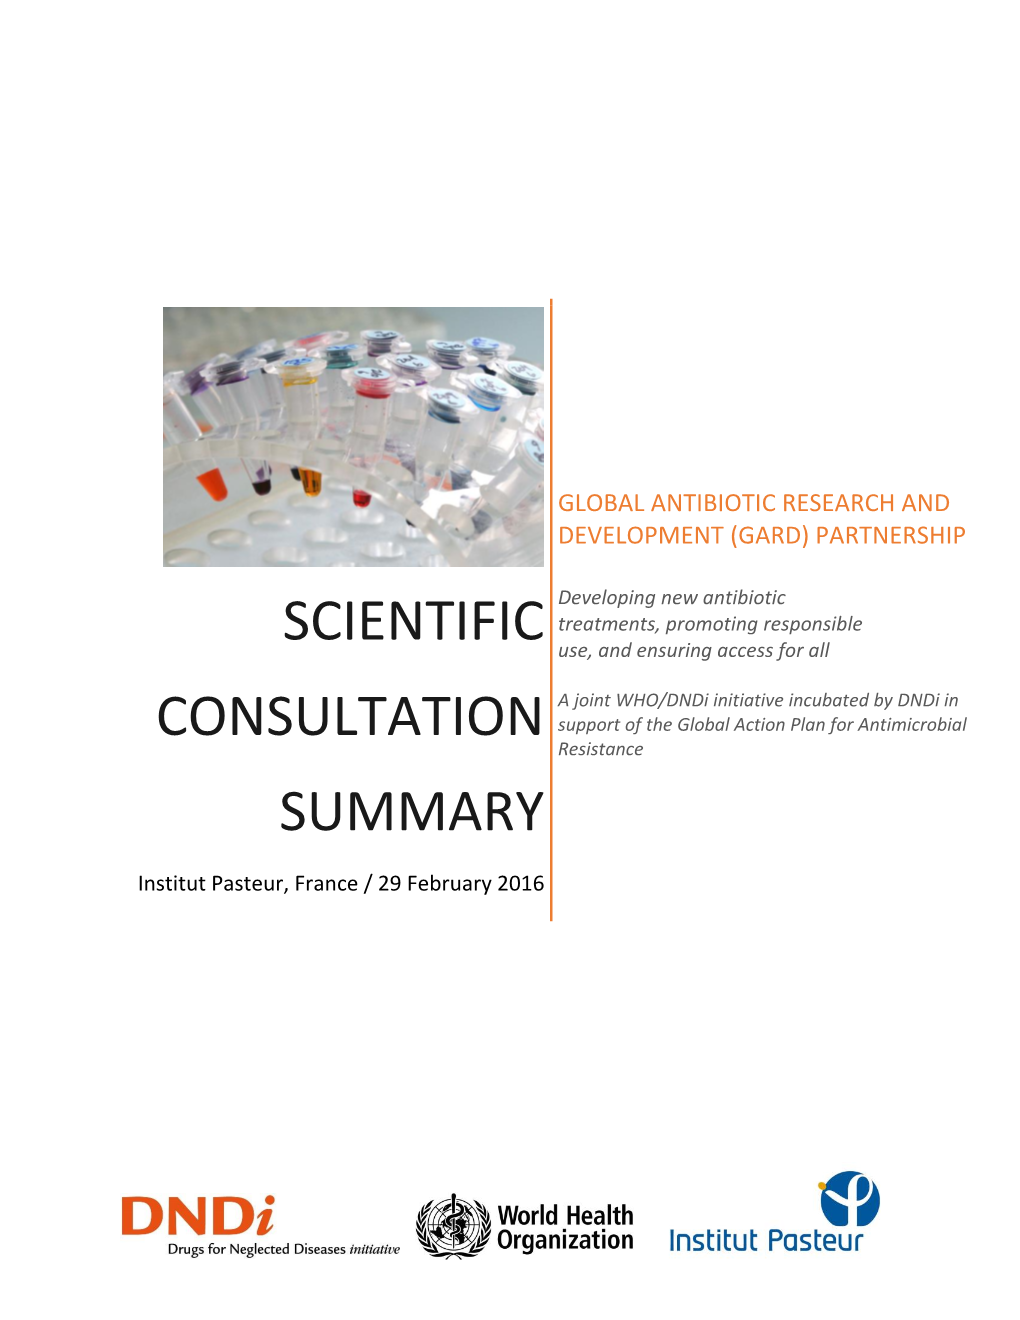 Scientific Consultation Summary